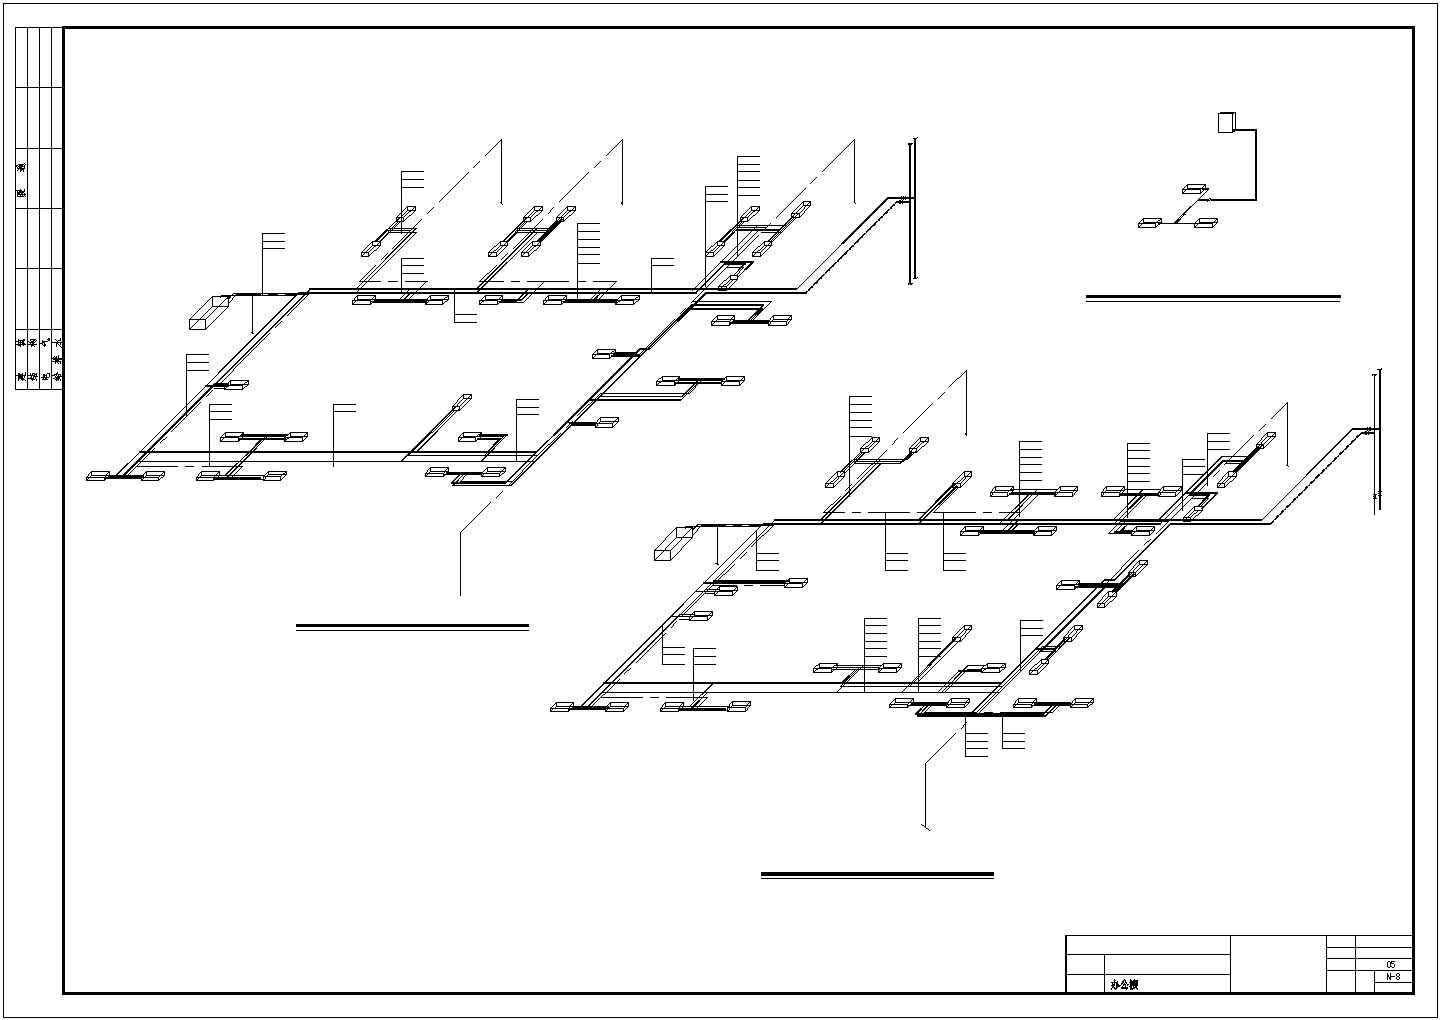 工业园区办公楼中央空调工程系统设计方案图